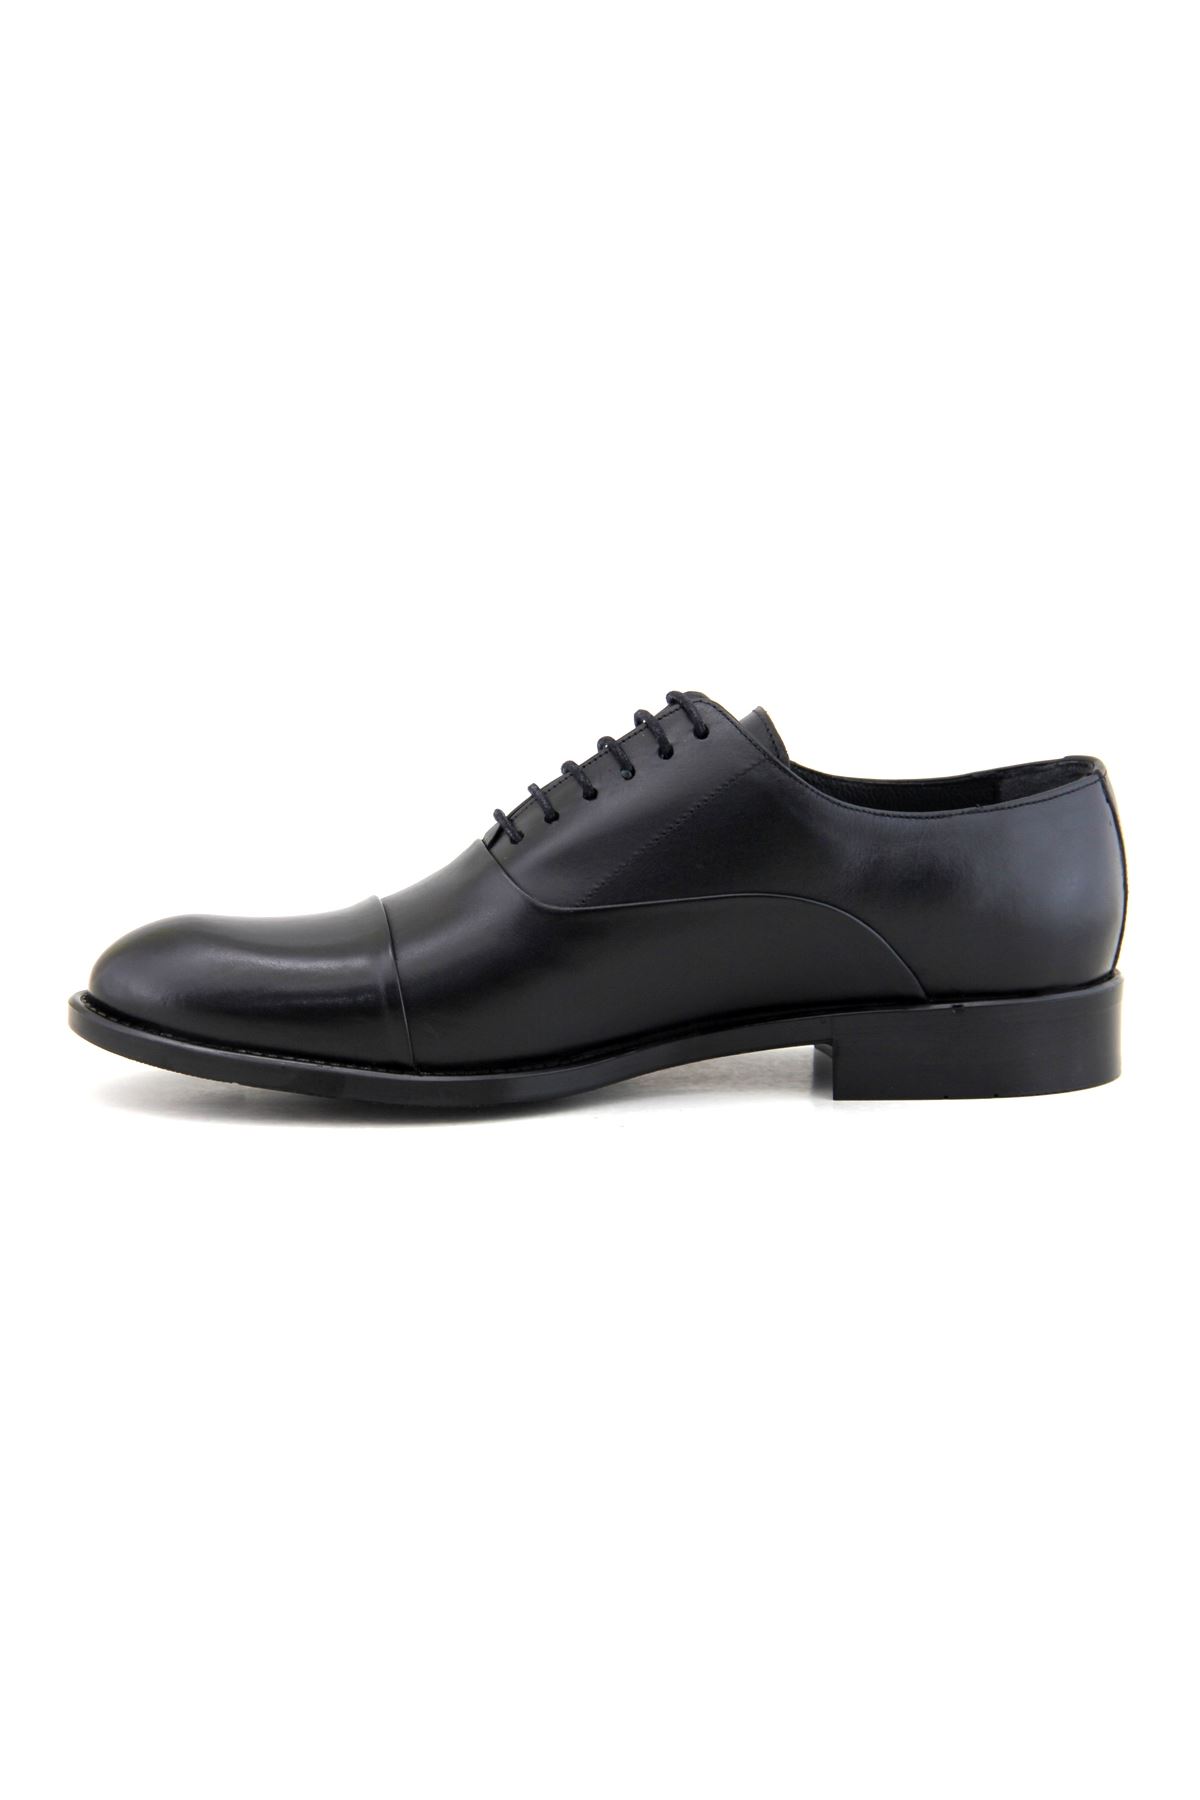 Fosco 7102 Hakiki Deri Klasik Erkek Ayakkabı - Siyah